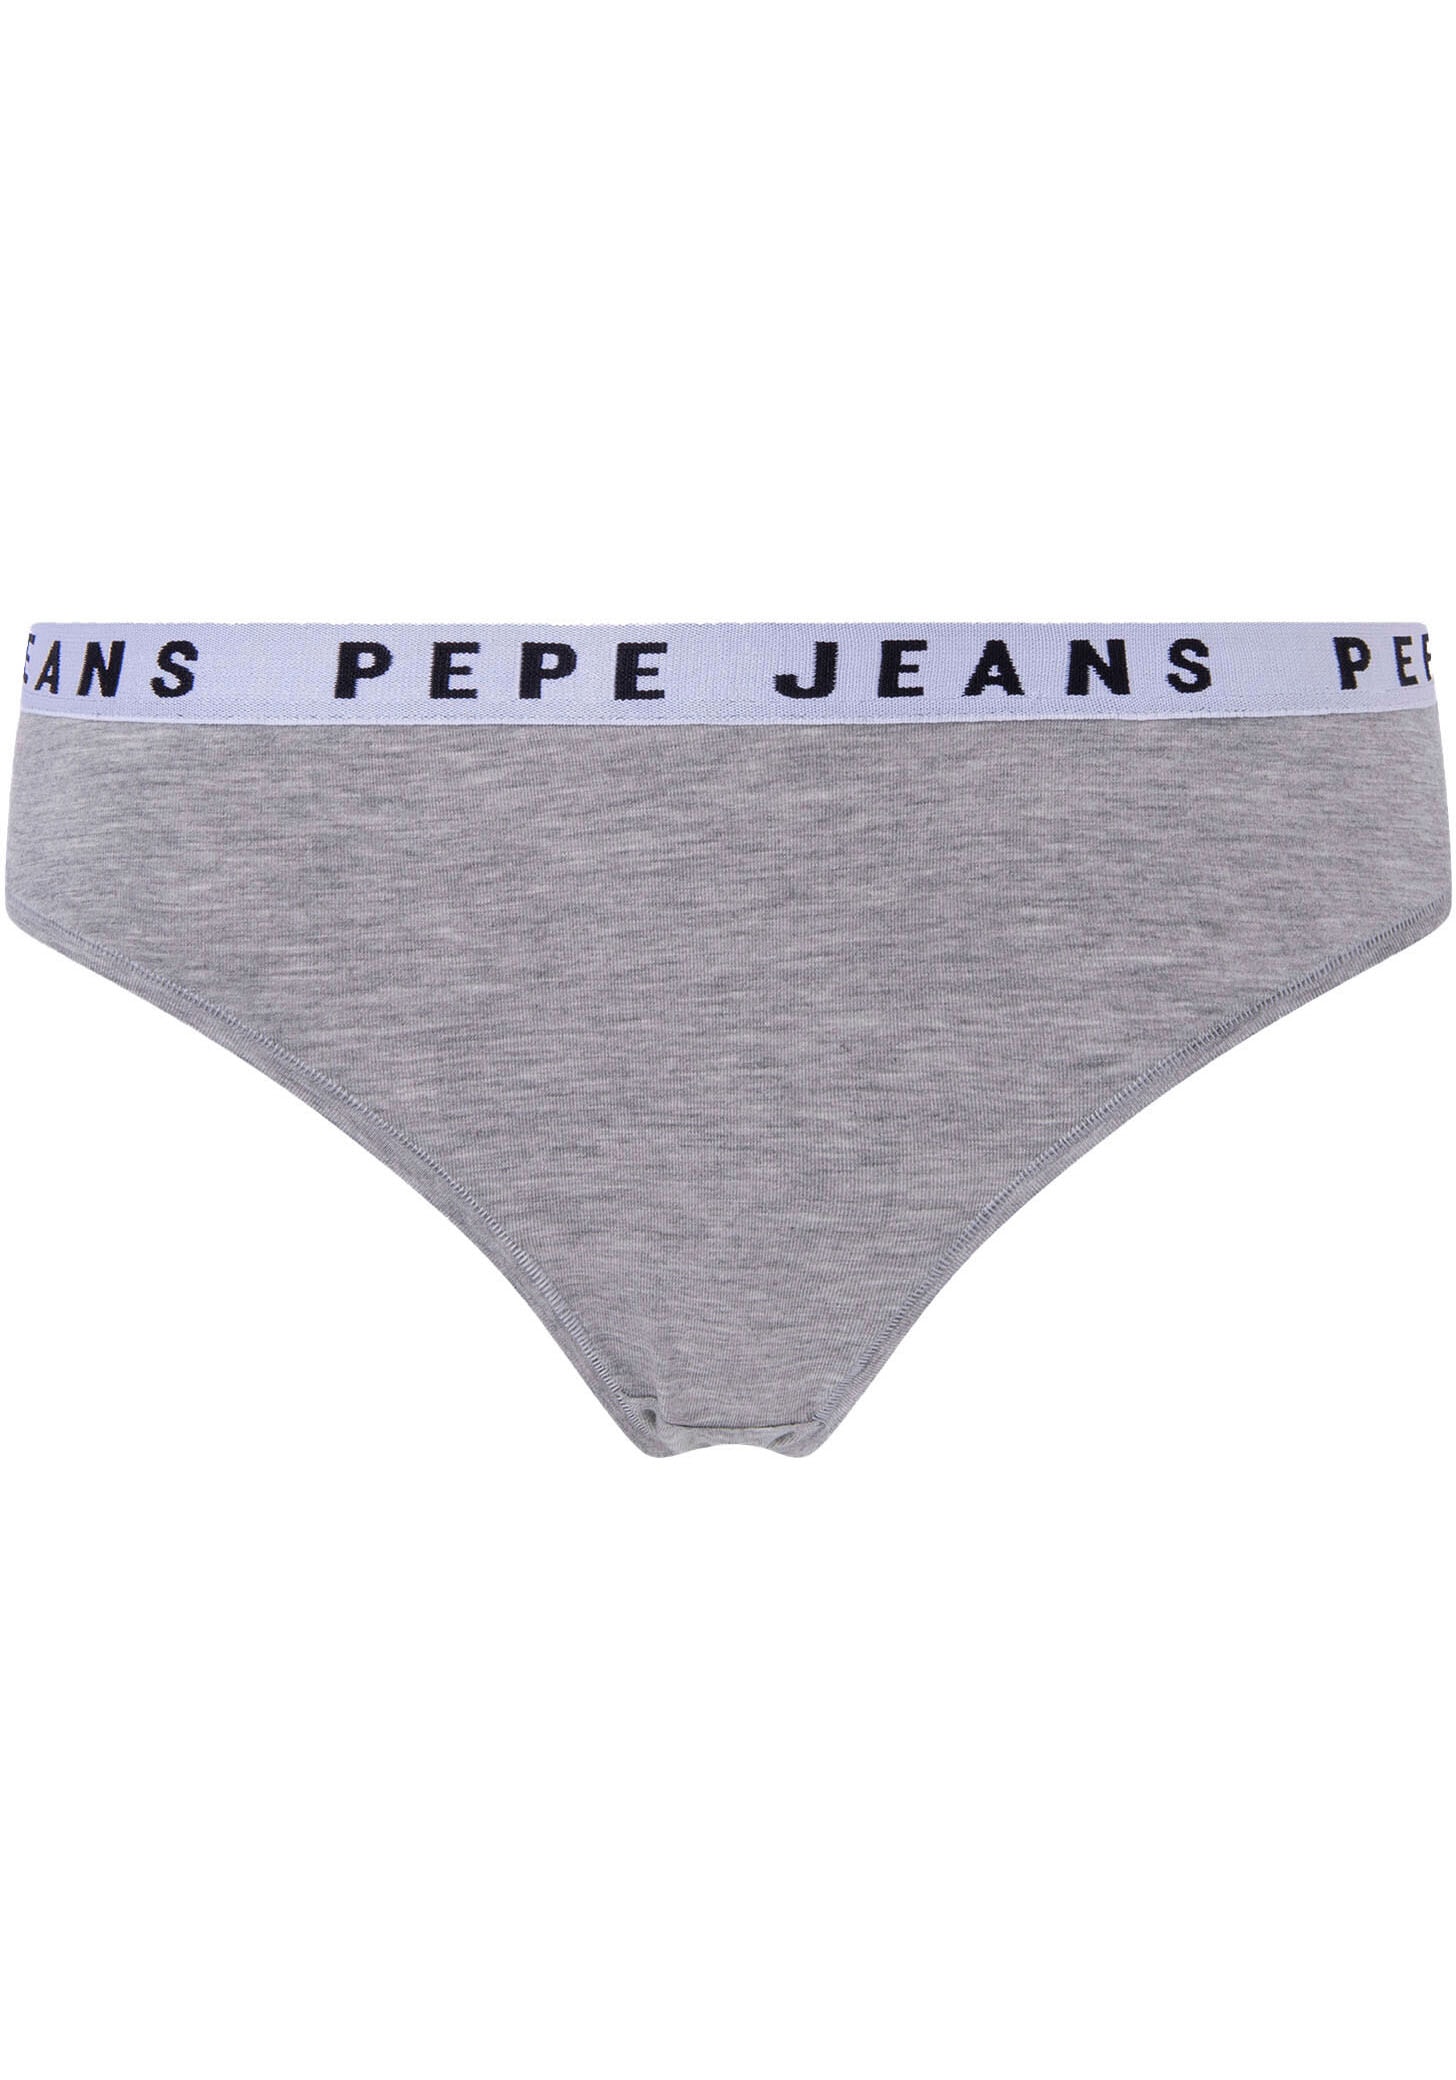 ♕ versandkostenfrei Schweiz Jeans jetzt bei Ackermann kaufen Markenmode Pepe